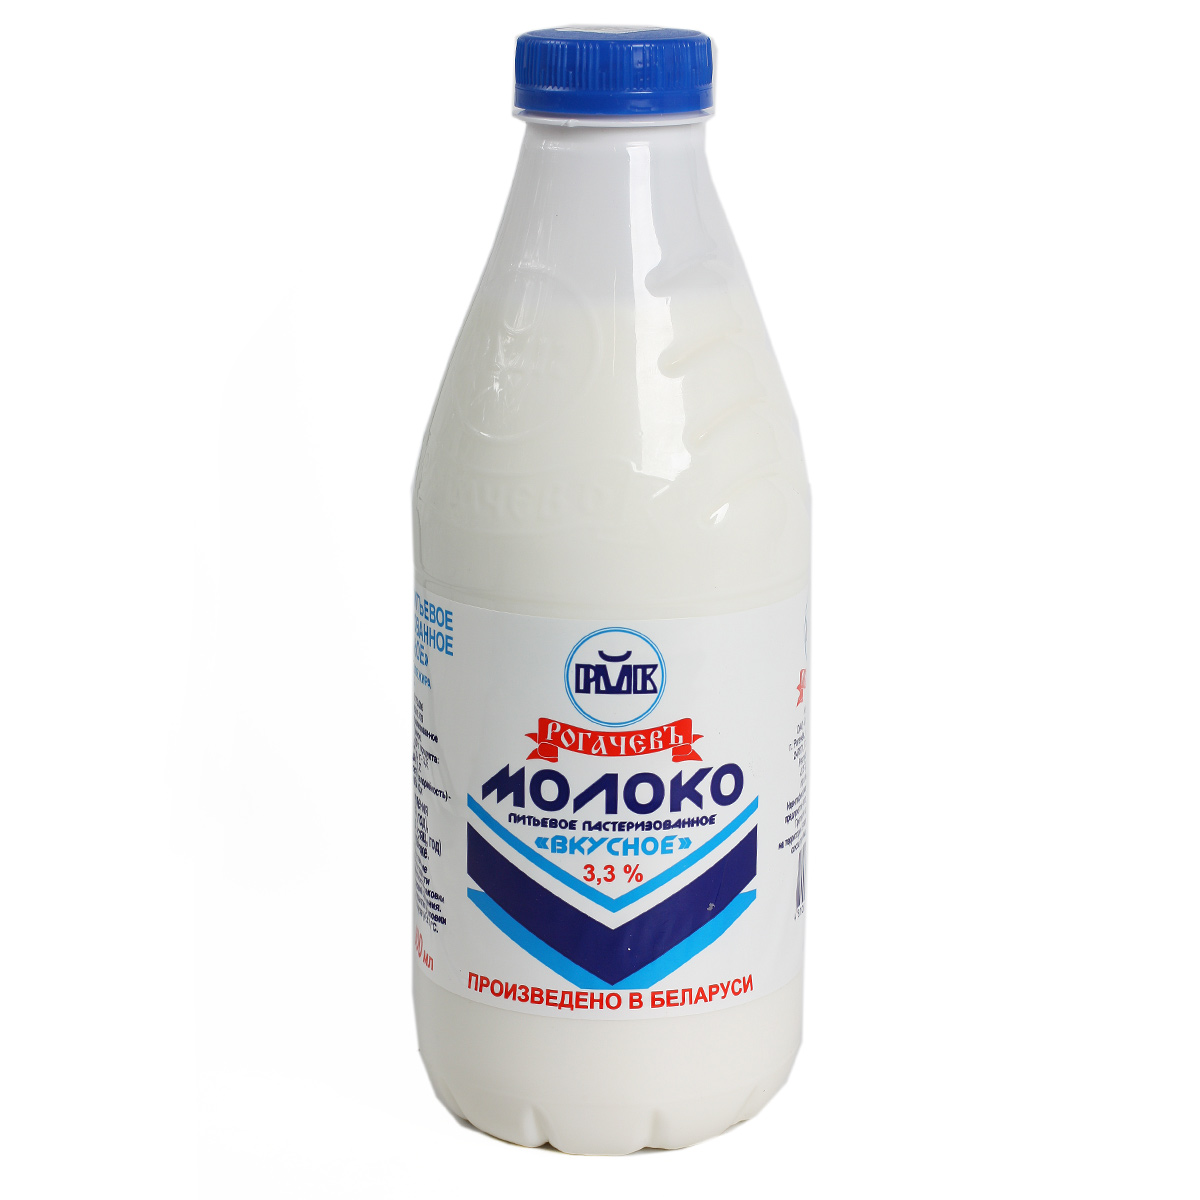 Рогачевъ молоко пастеризованное 3,3% 900мл